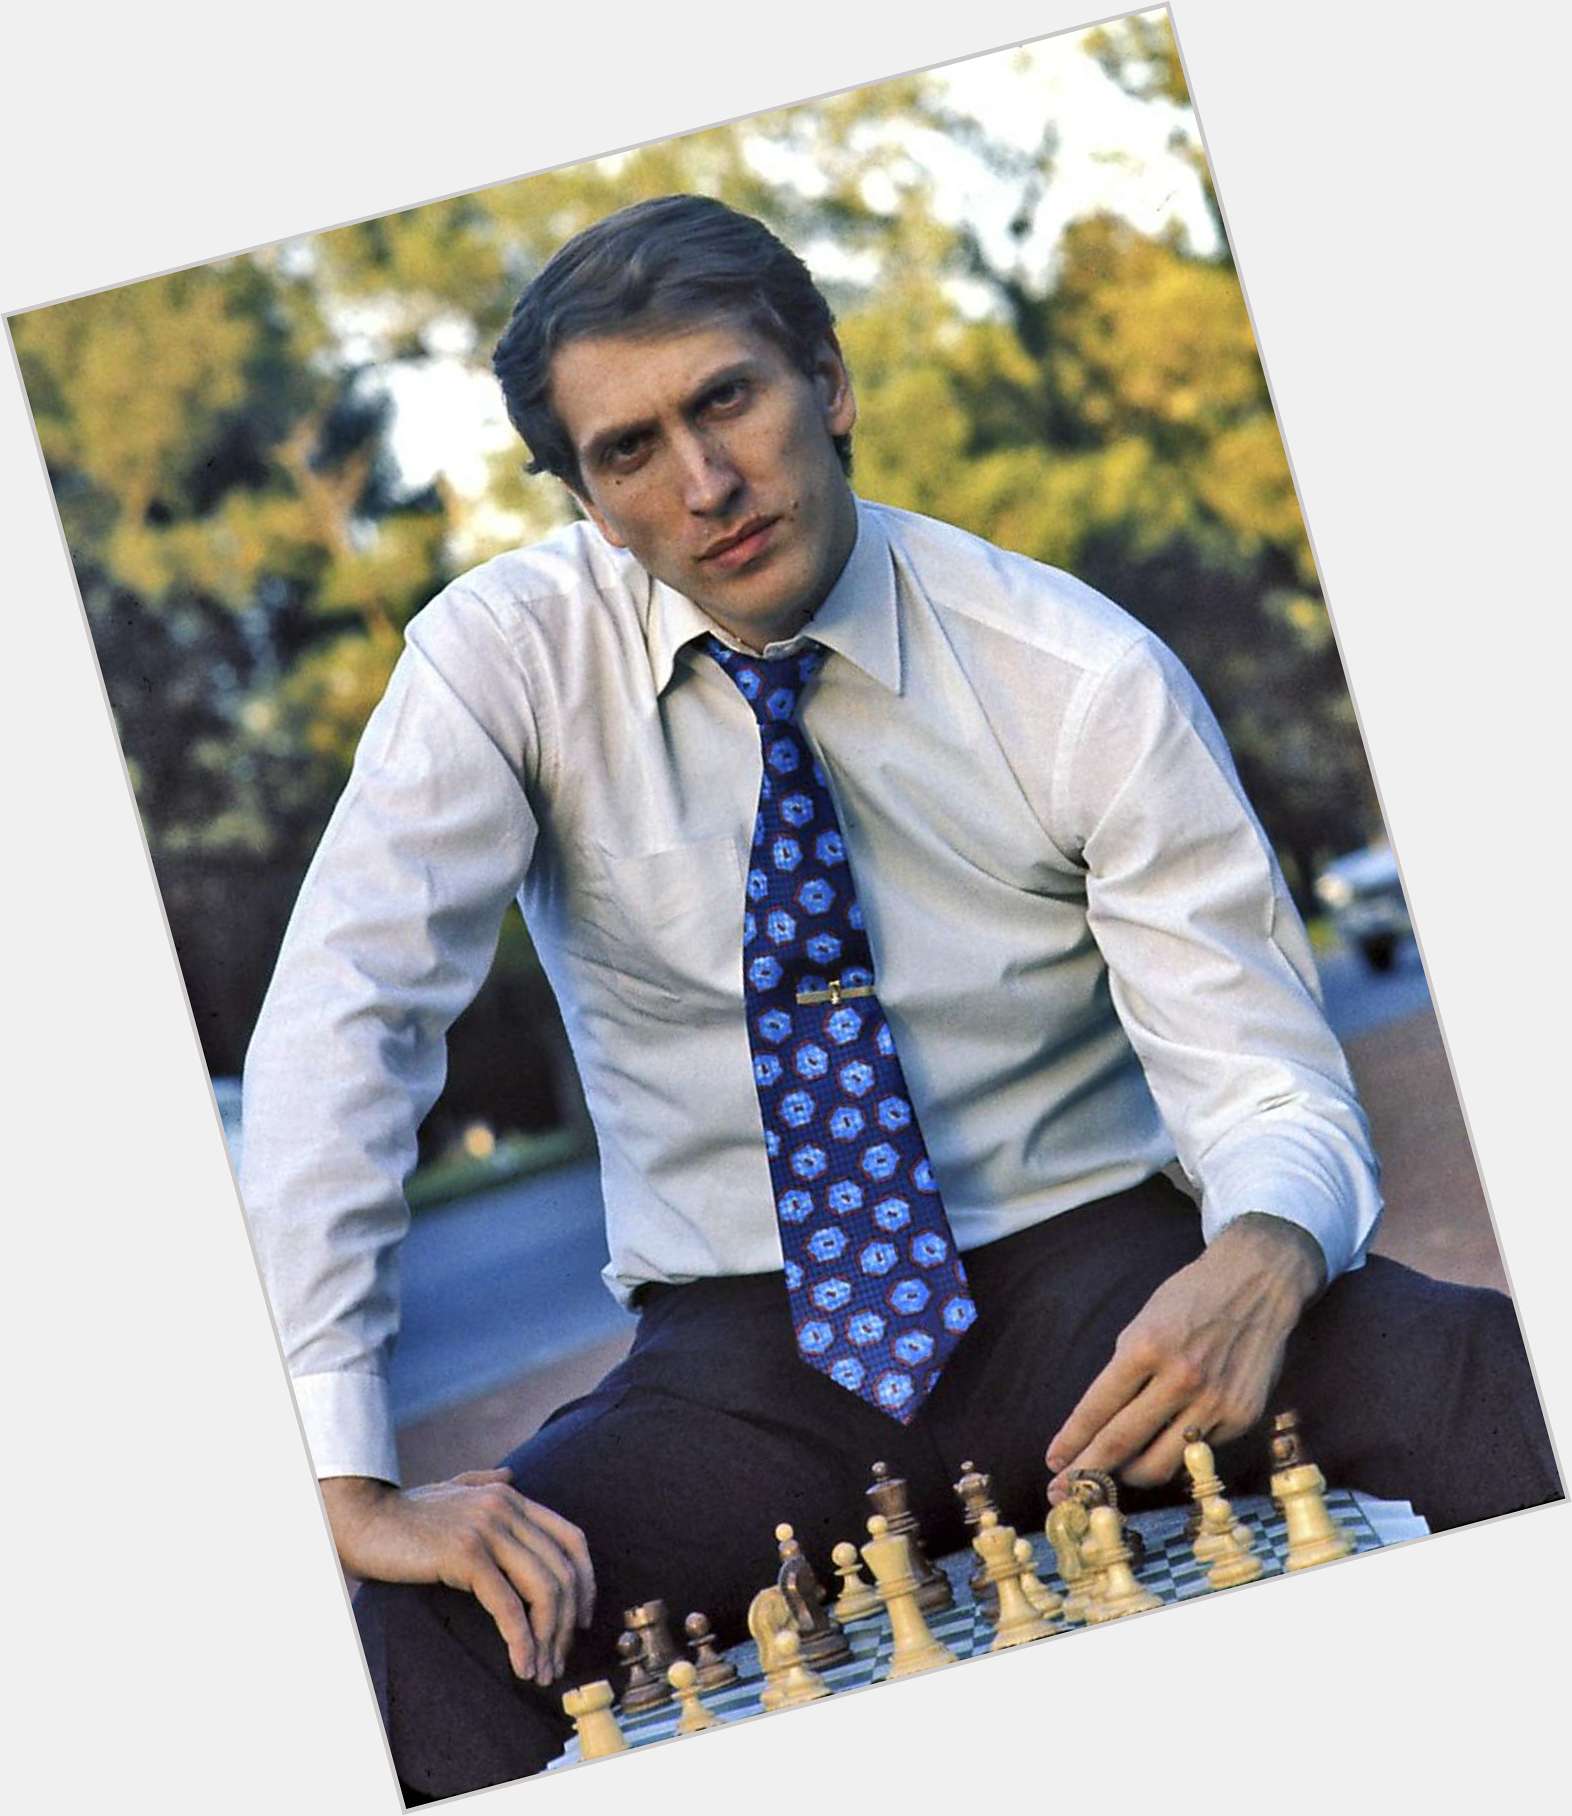 Bobby Fischer birthday 2015